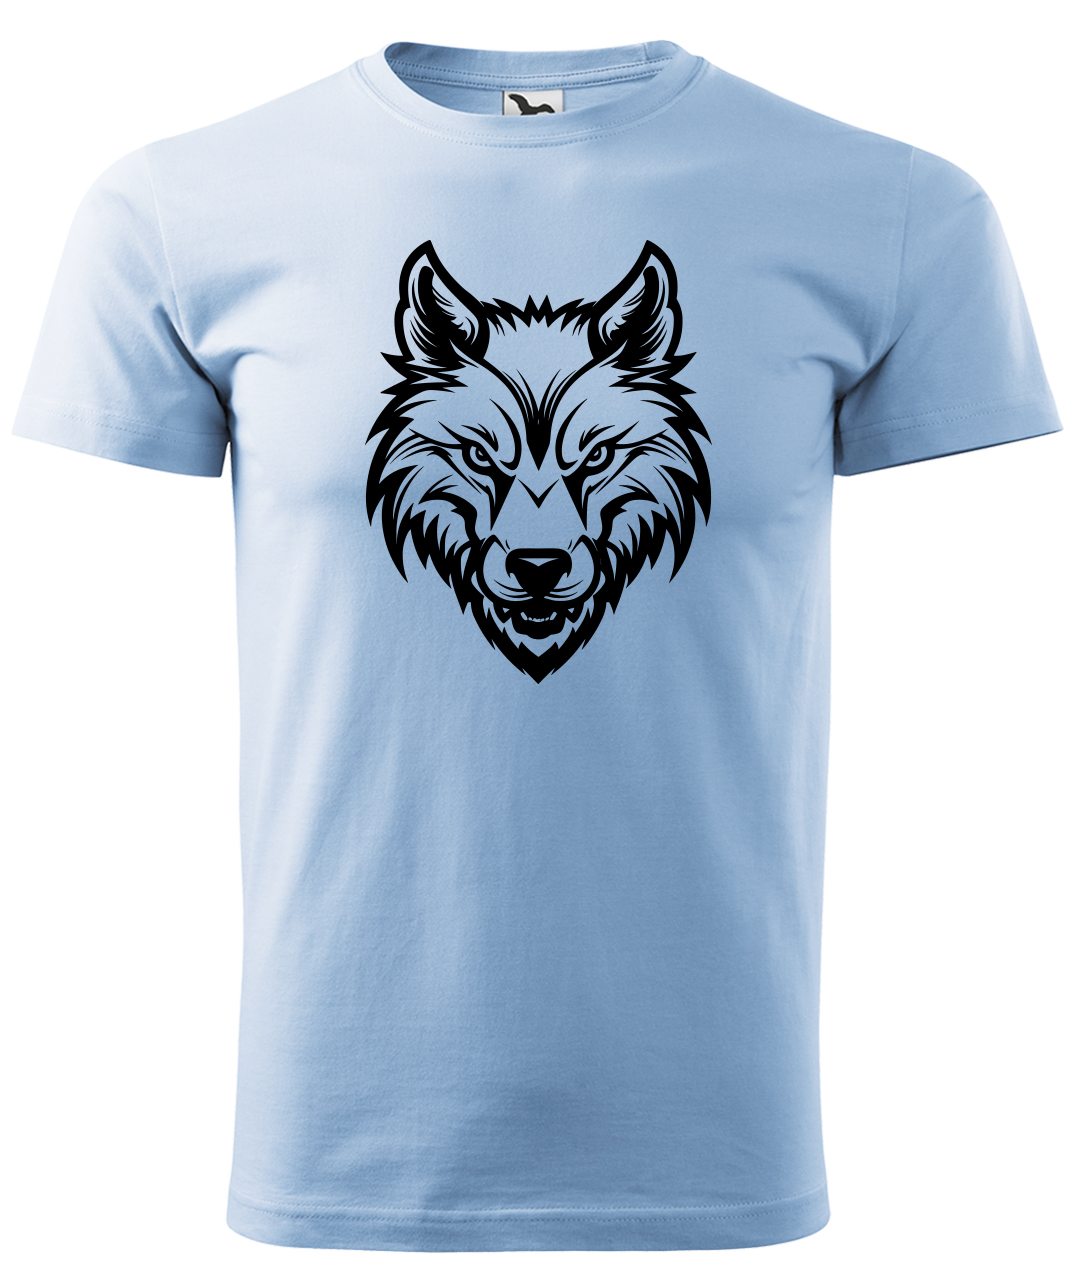 Dětské tričko s vlkem - Alfa samec Velikost: 4 roky / 110 cm, Barva: Nebesky modrá (15), Délka rukávu: Krátký rukáv